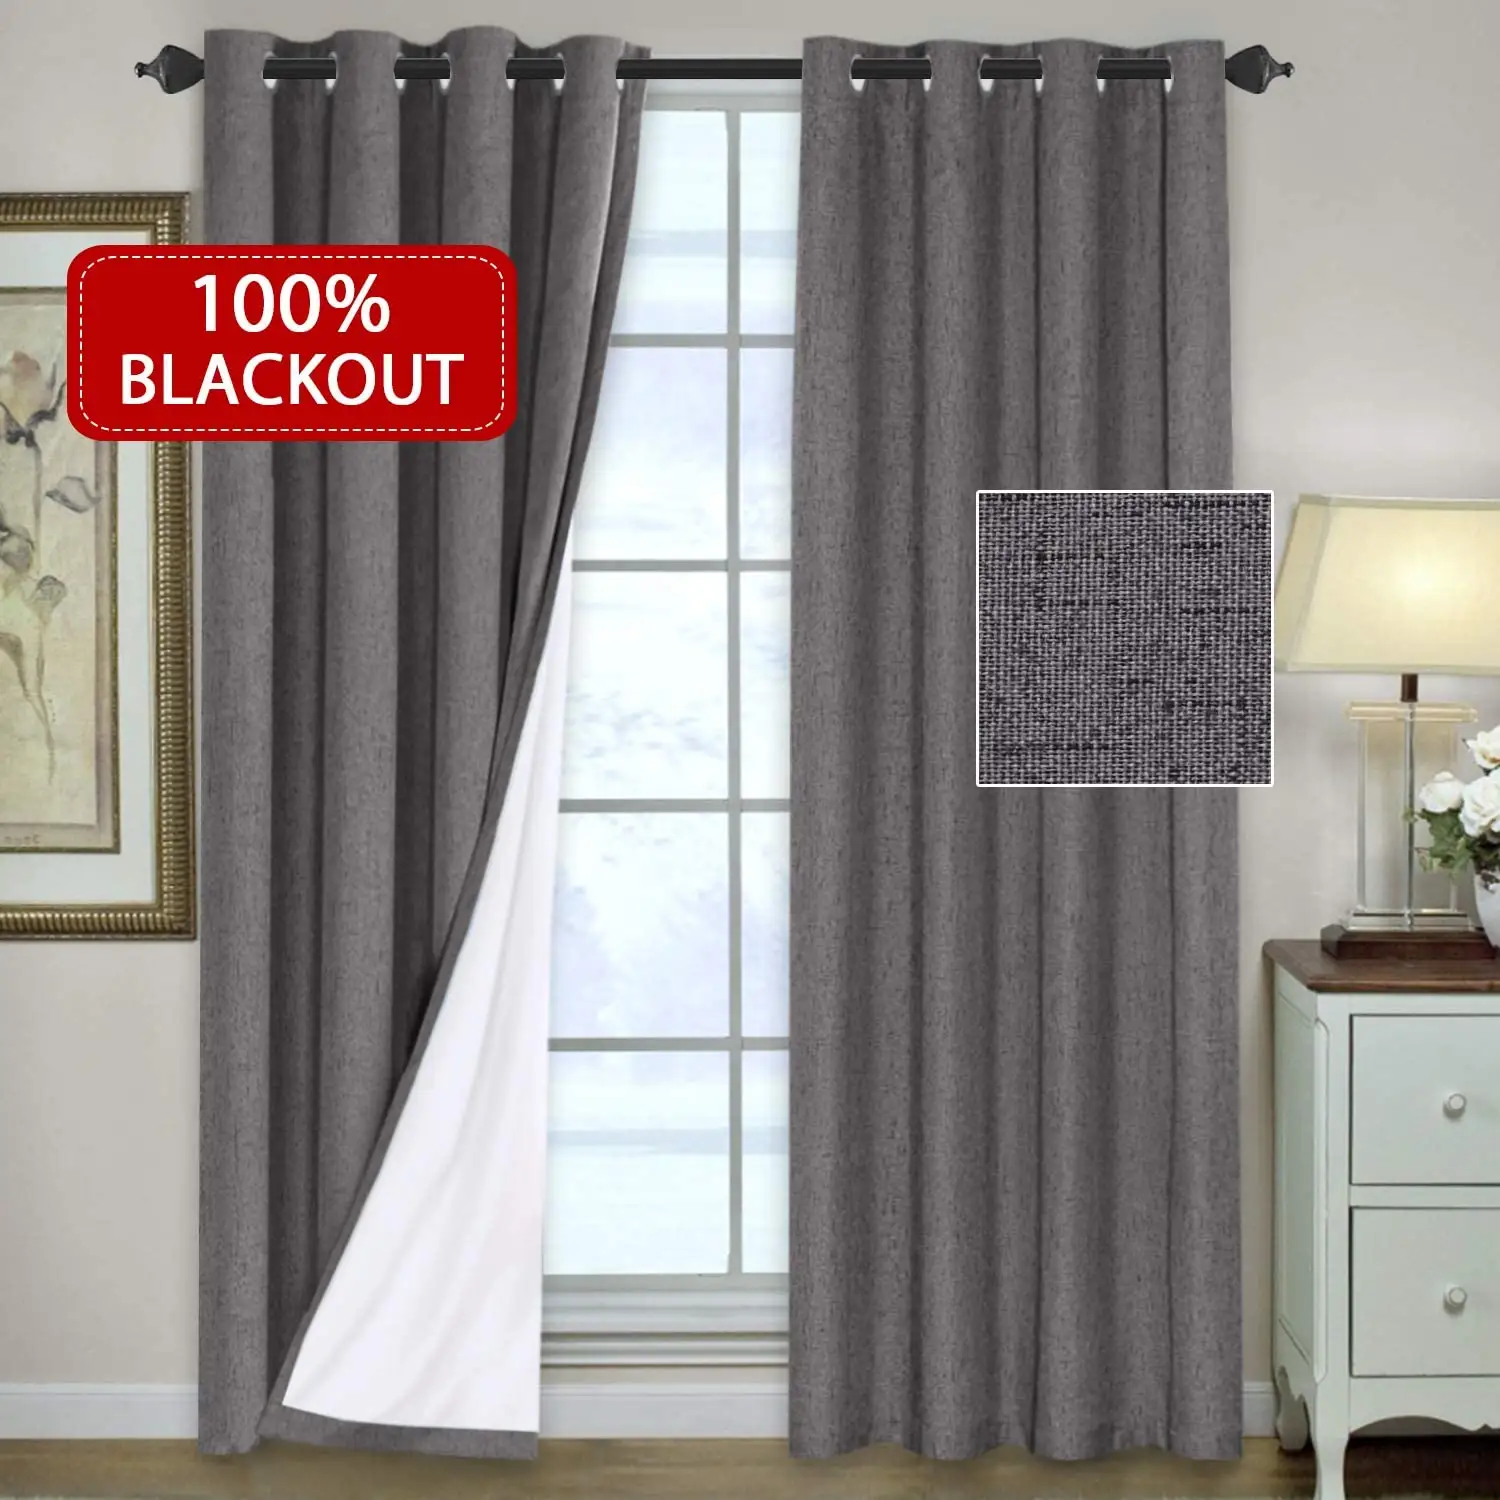 Kain lapisan tirai blackout 100% untuk kamar tidur, kain tirai pemadaman